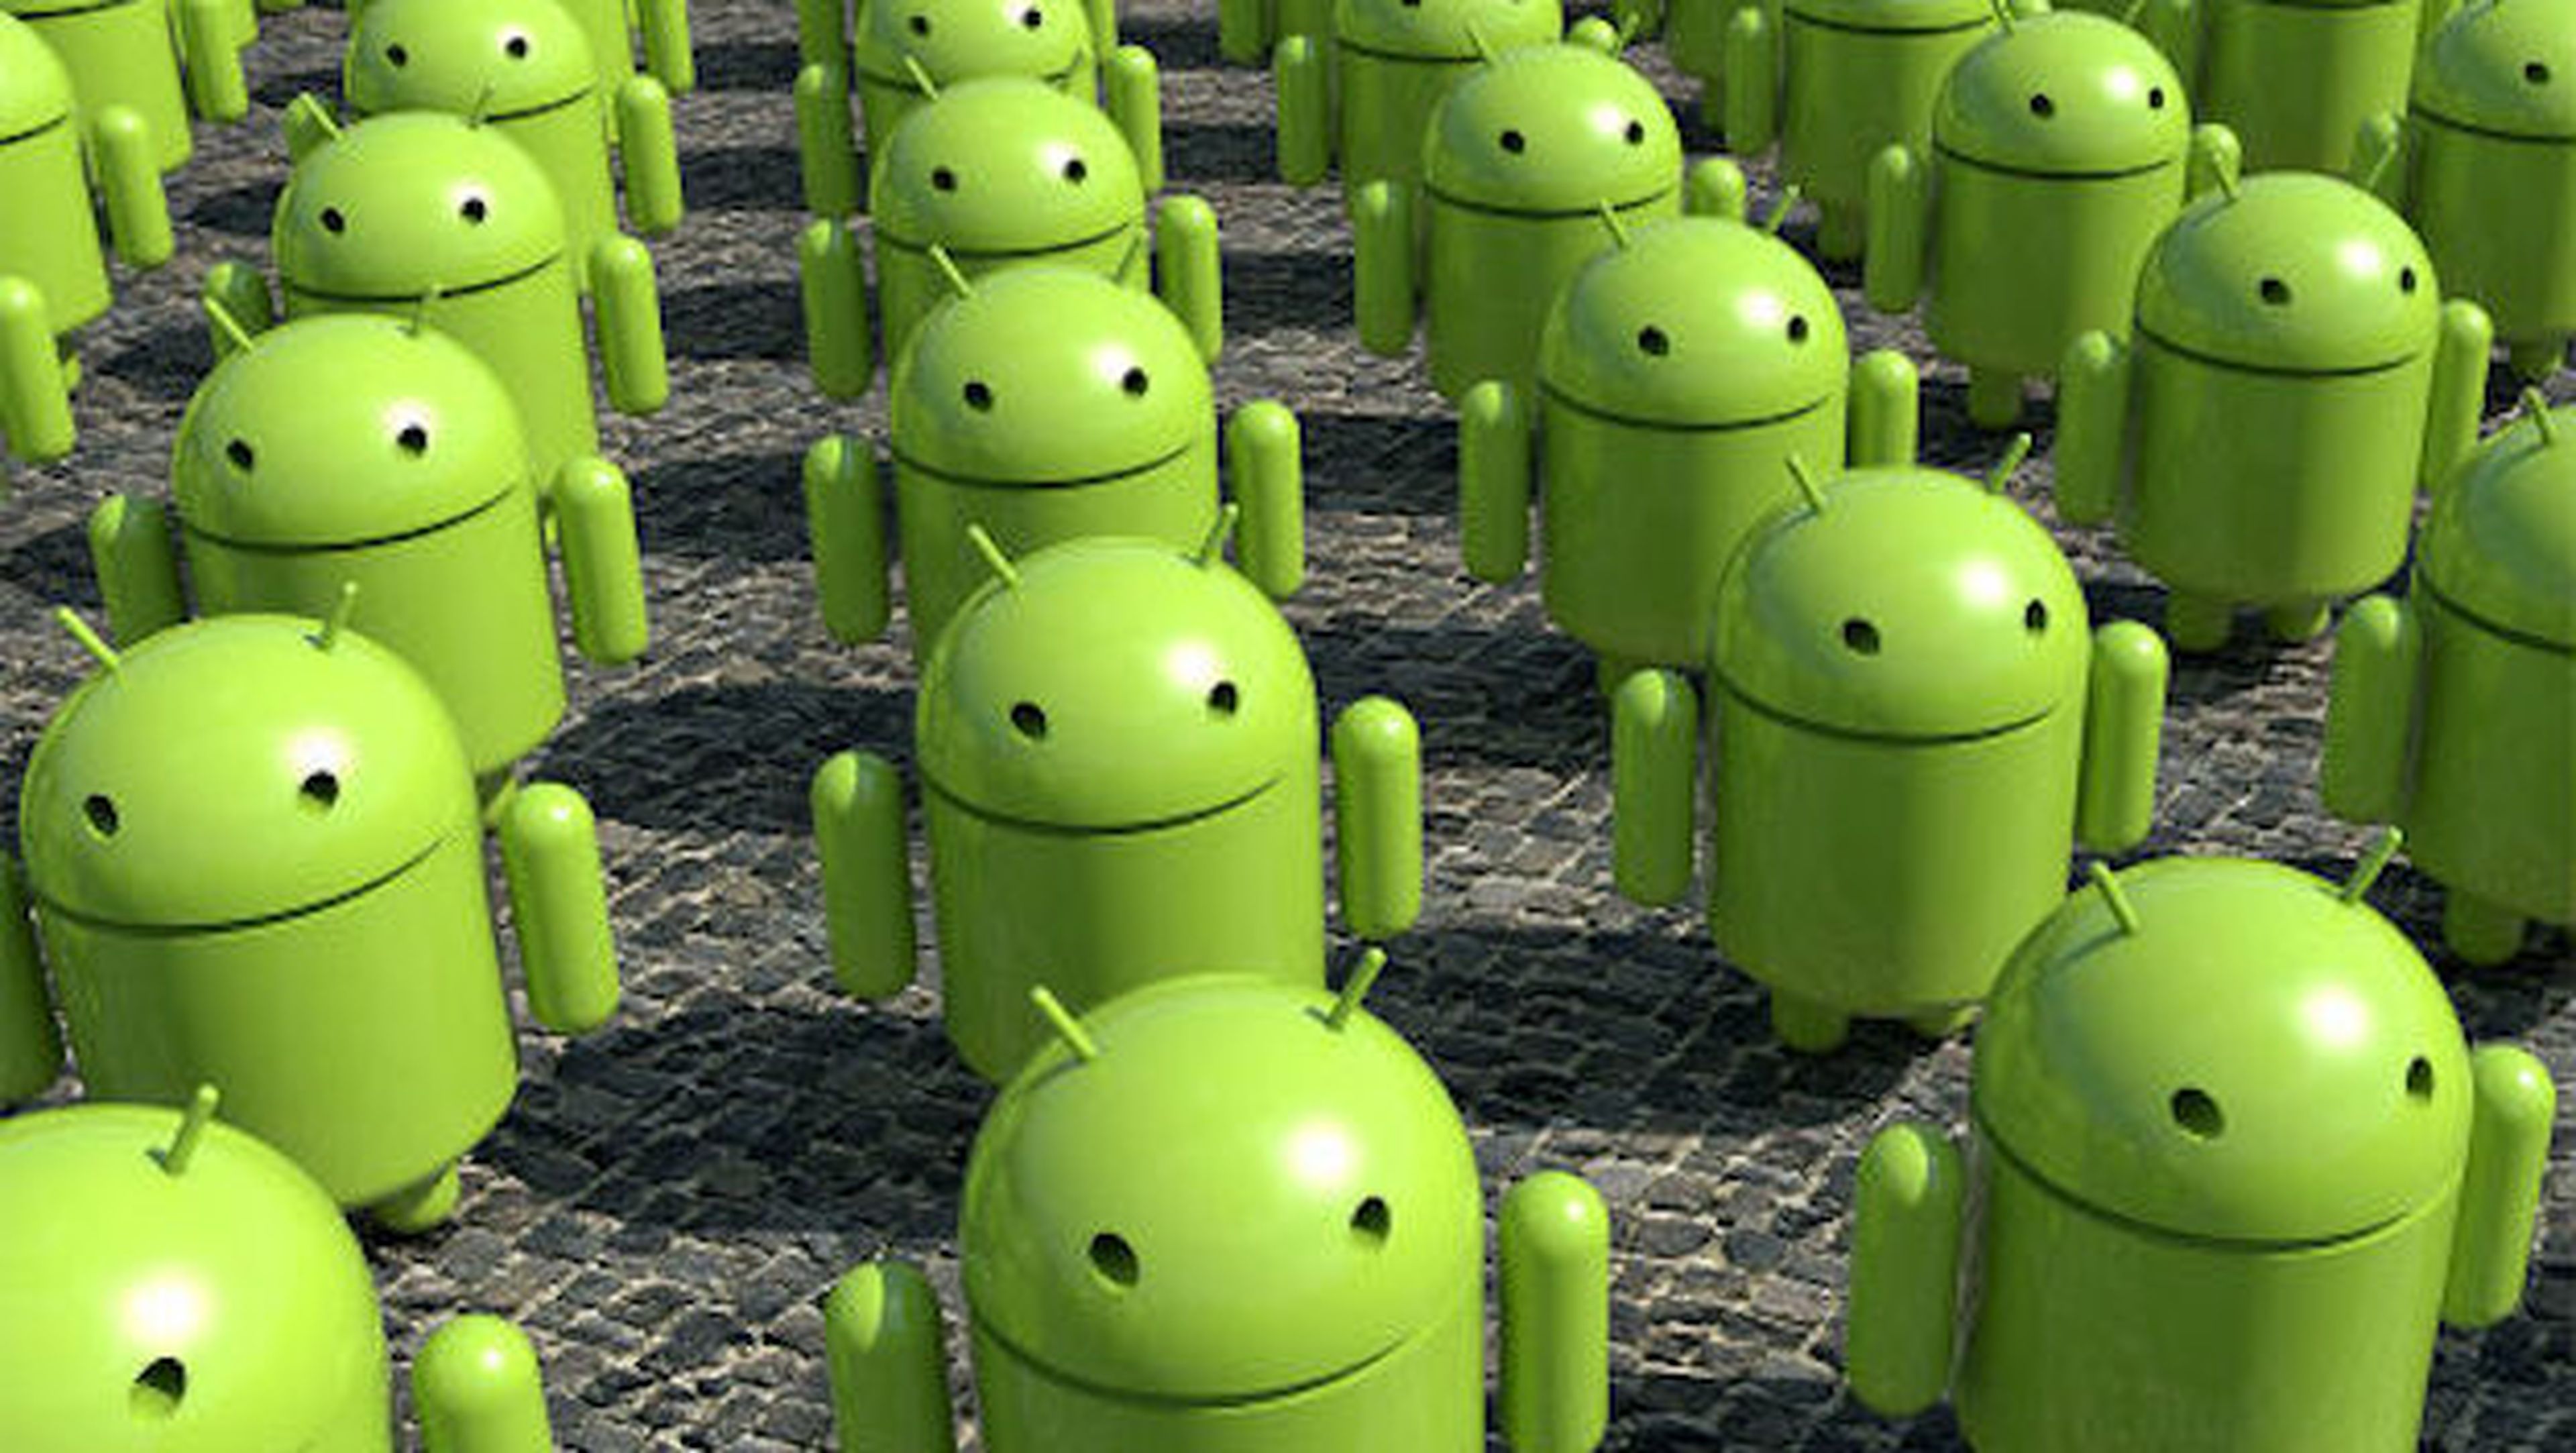 785 millones de móviles Android fueron vendidos en 2013